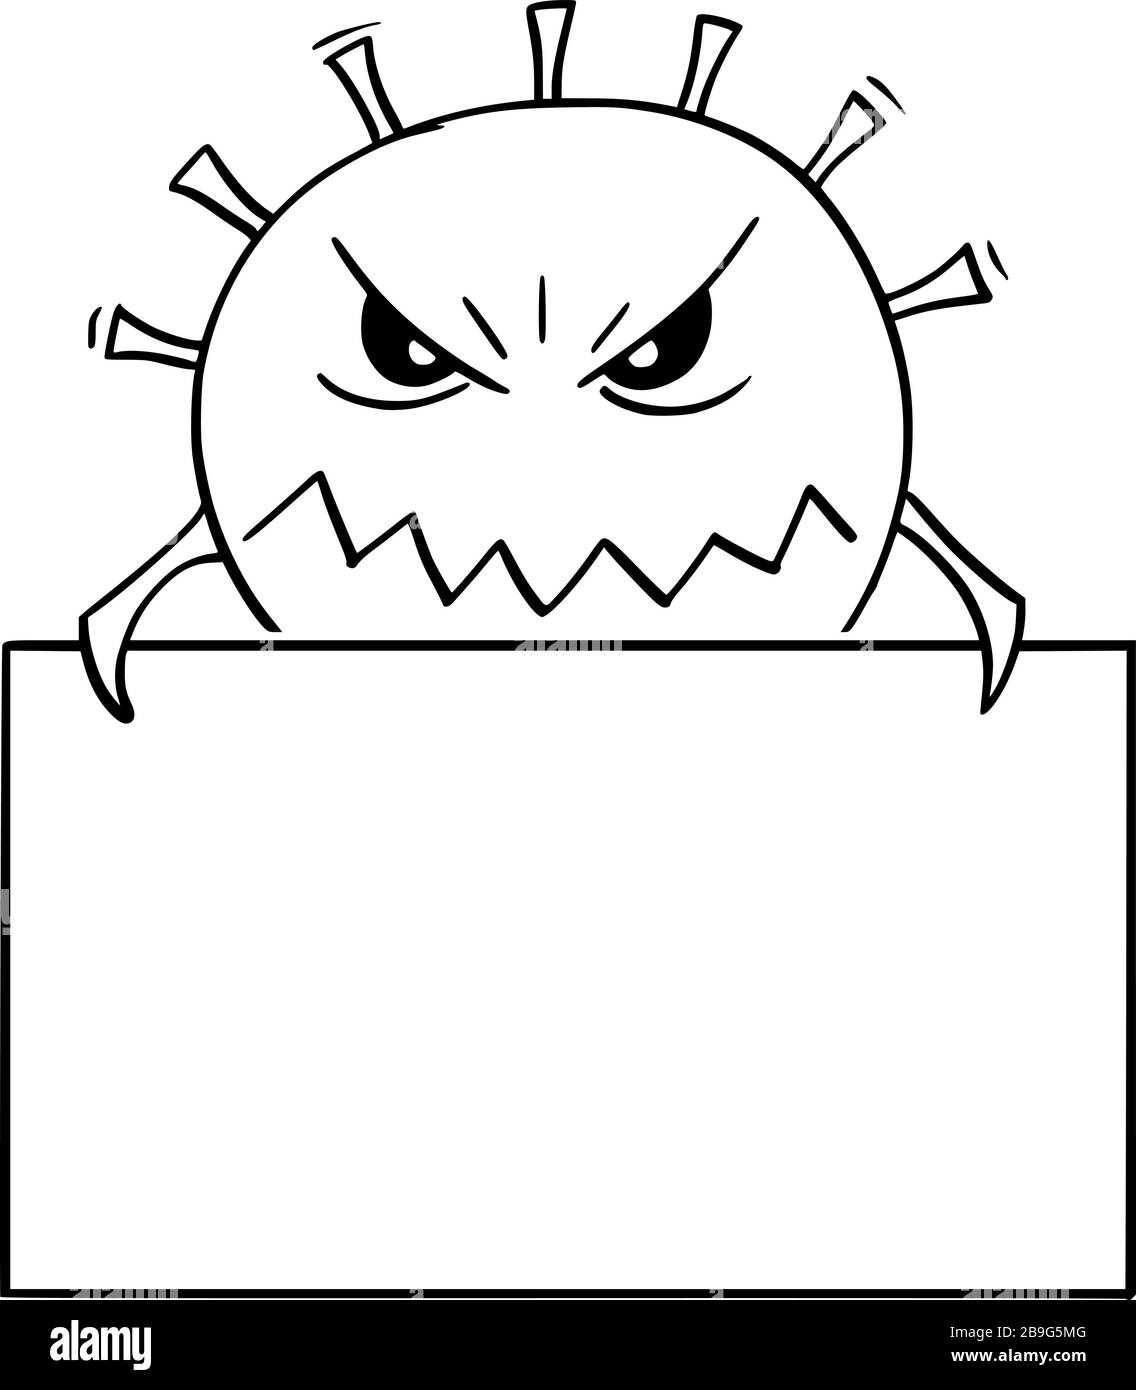 Vektor-Cartoon-Illustration von Coronavirus Covid-19 oder Virus oder Bakterien oder pathogenes gefährliches Monster, das leere Zeichen hält. Stock Vektor